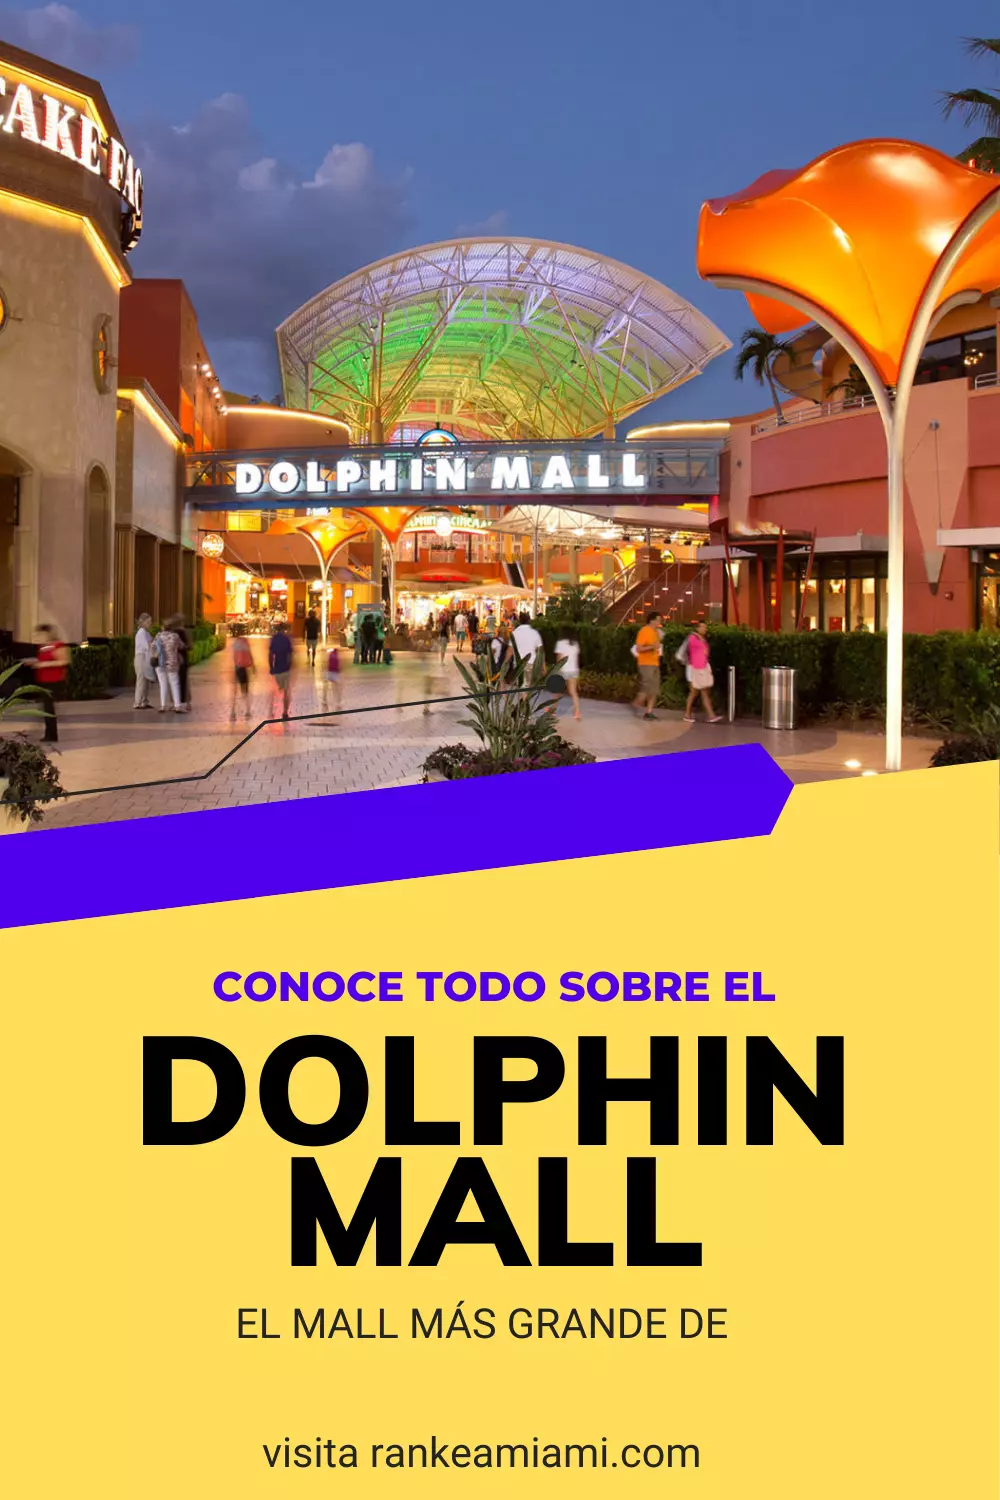 Dolphin Mall - Conoce su ubicación, horarios y tiendas disponibles